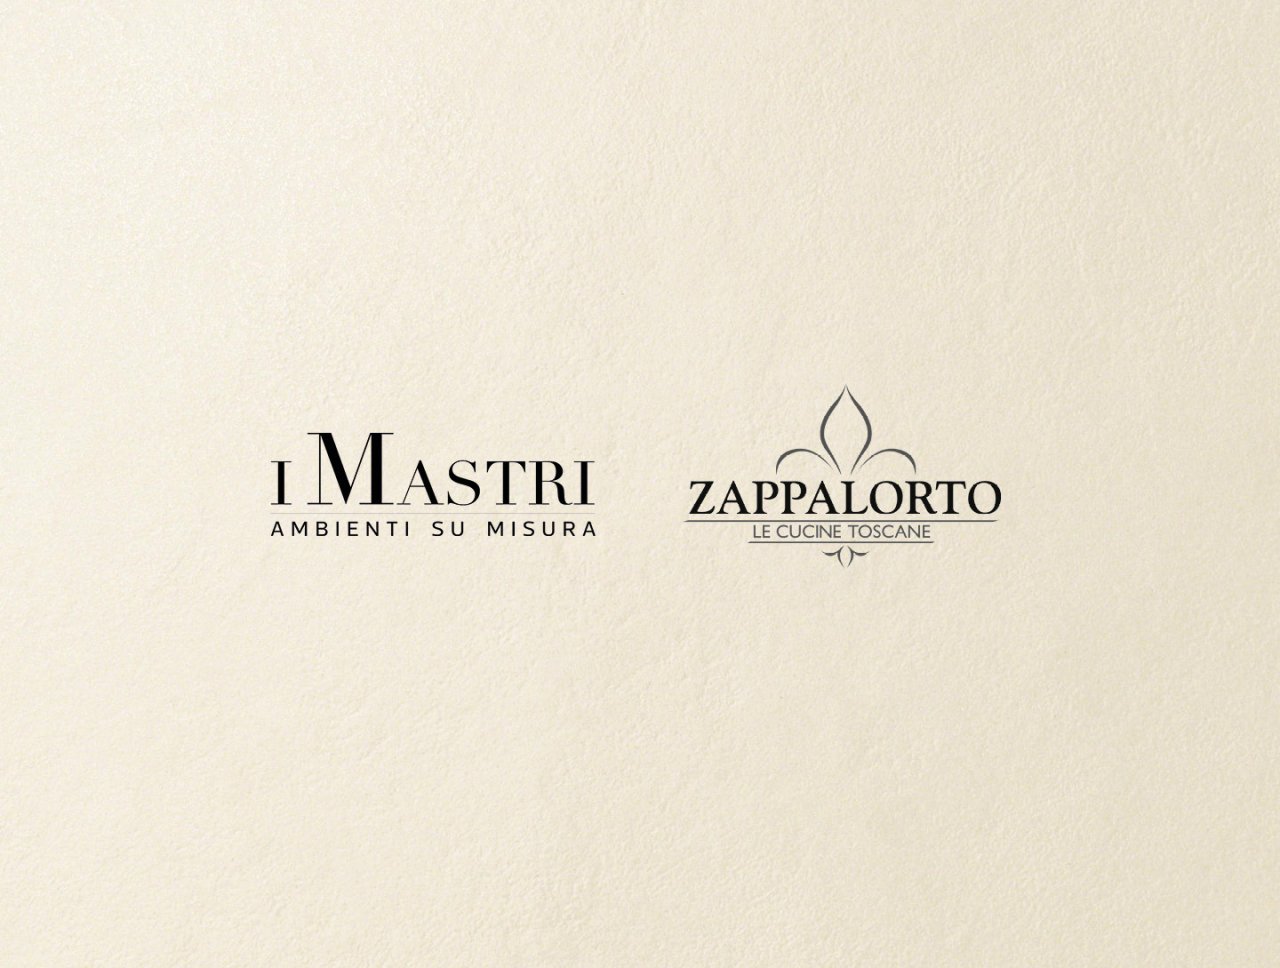 Zappalorto e I Mastri annunciano la fusione aziendale.